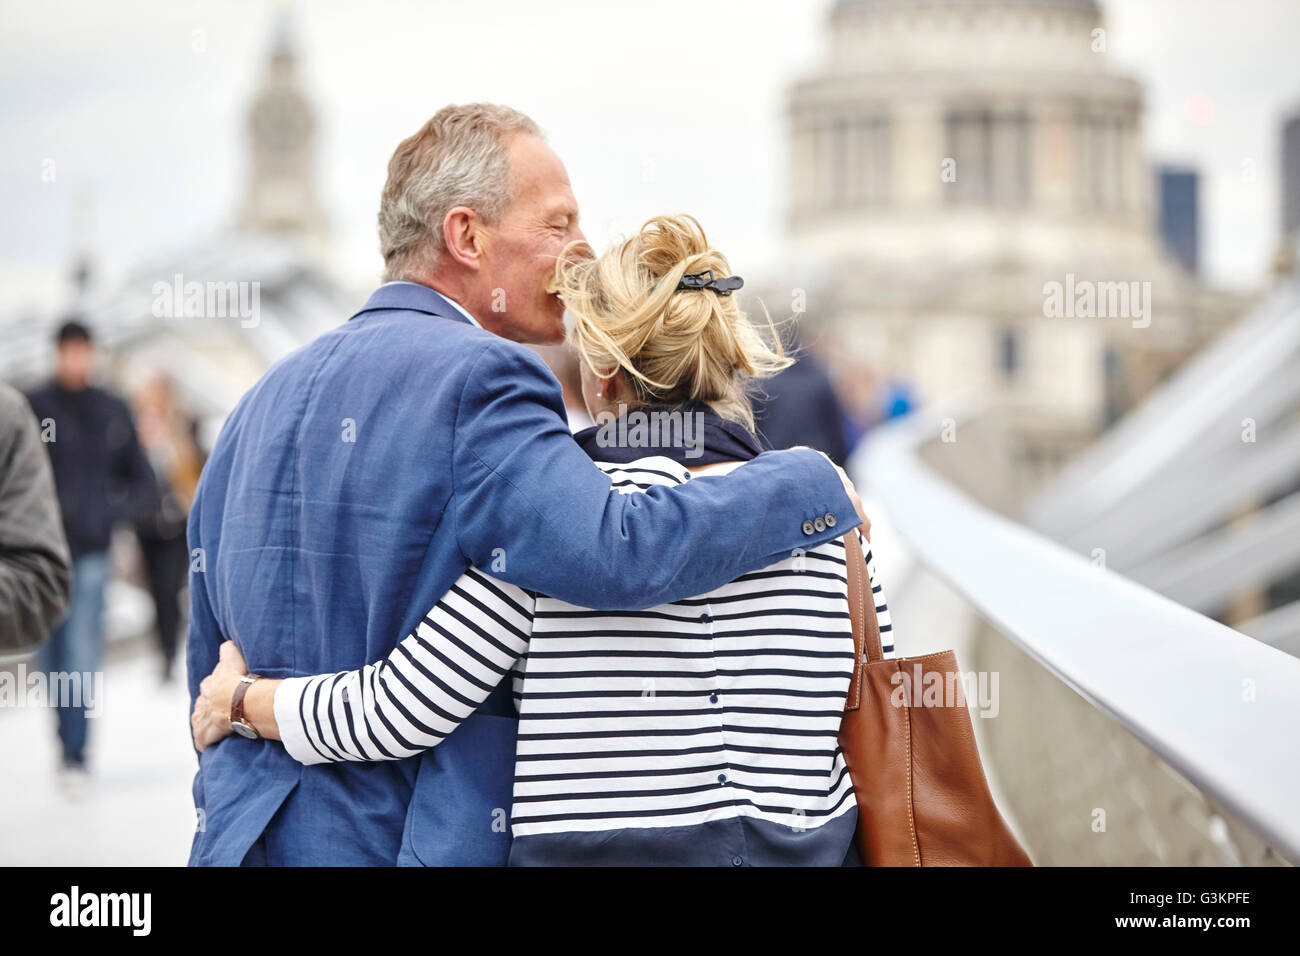 Vue arrière de la romantique mature dating couple crossing Millennium Bridge, London, UK Banque D'Images